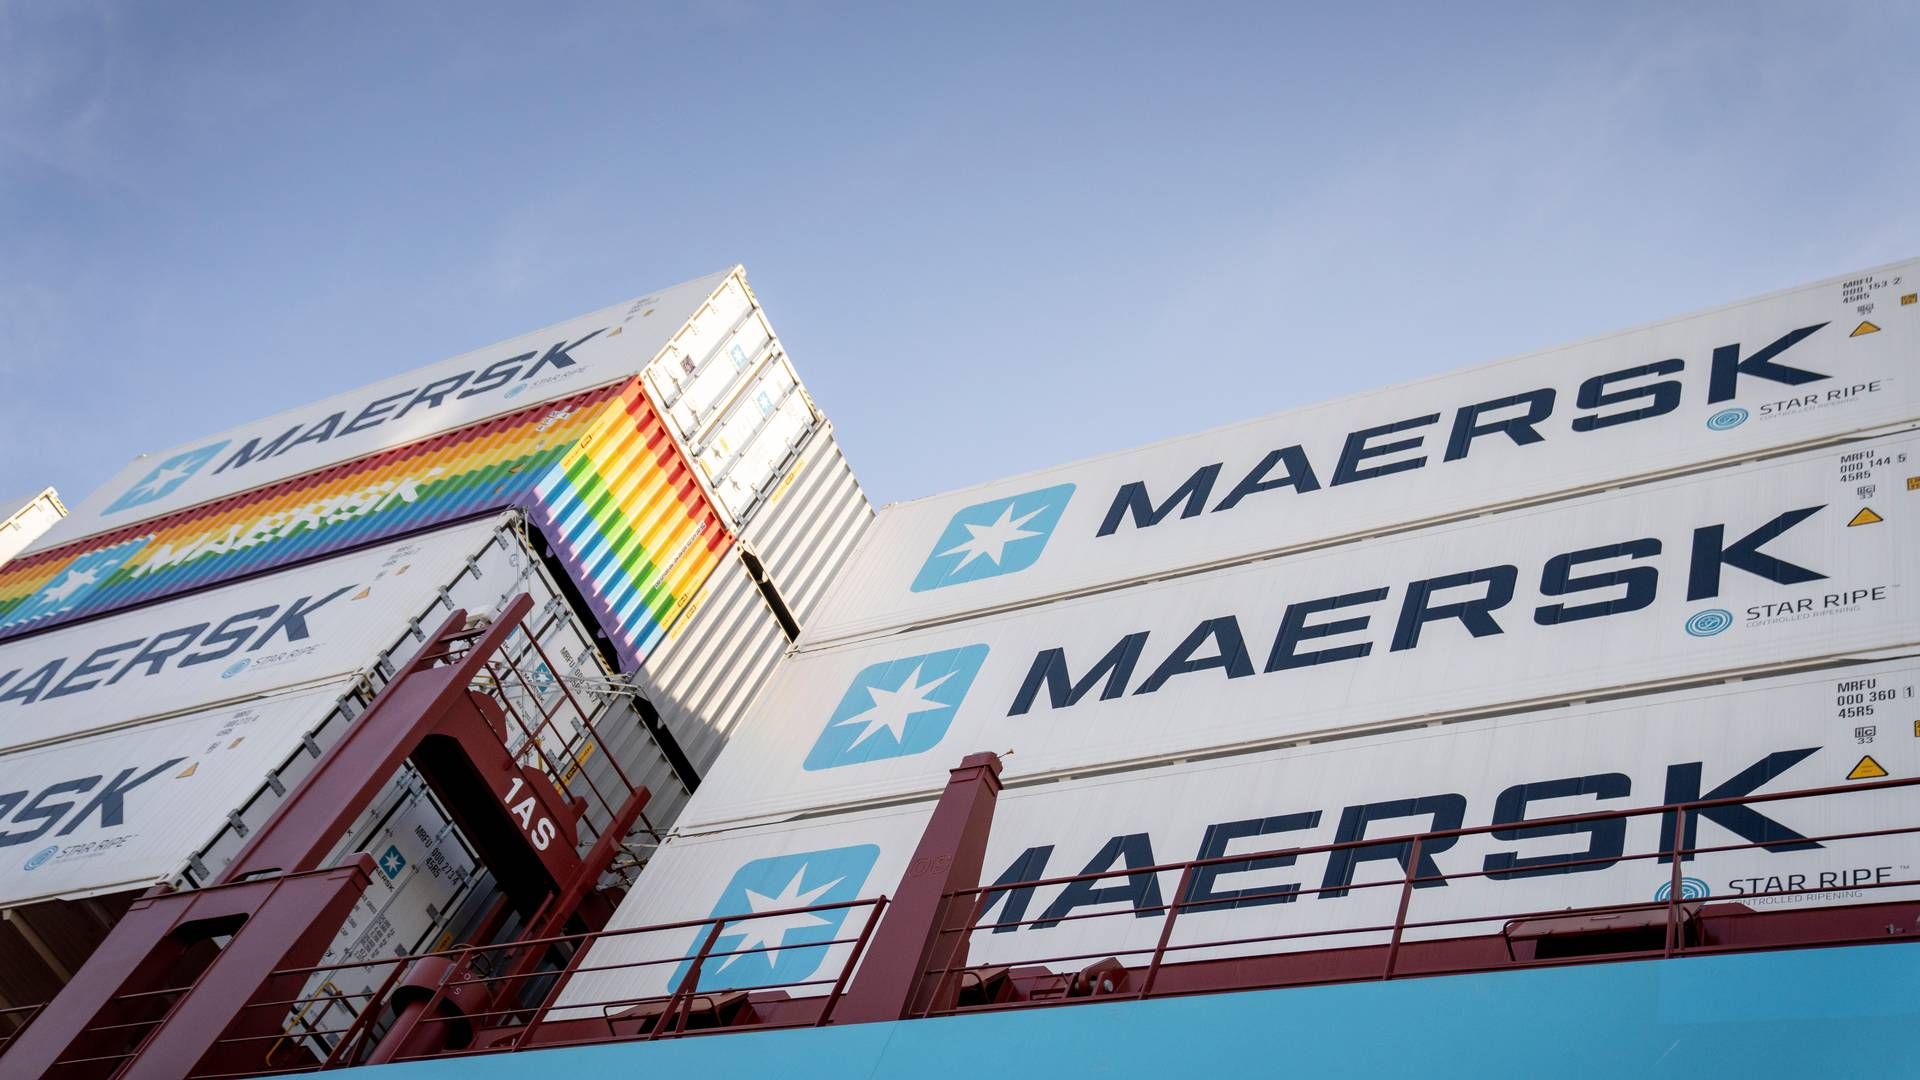 Mærsks nye metanoldrevne containerskib har torsdag fået navnet "Laura Mærsk". Metanol er et af fremtidens brændstoffer, men det bliver en stor udfordring at få produktion op i stor skala, forklarer forsker. | Foto: Mads Claus Rasmussen